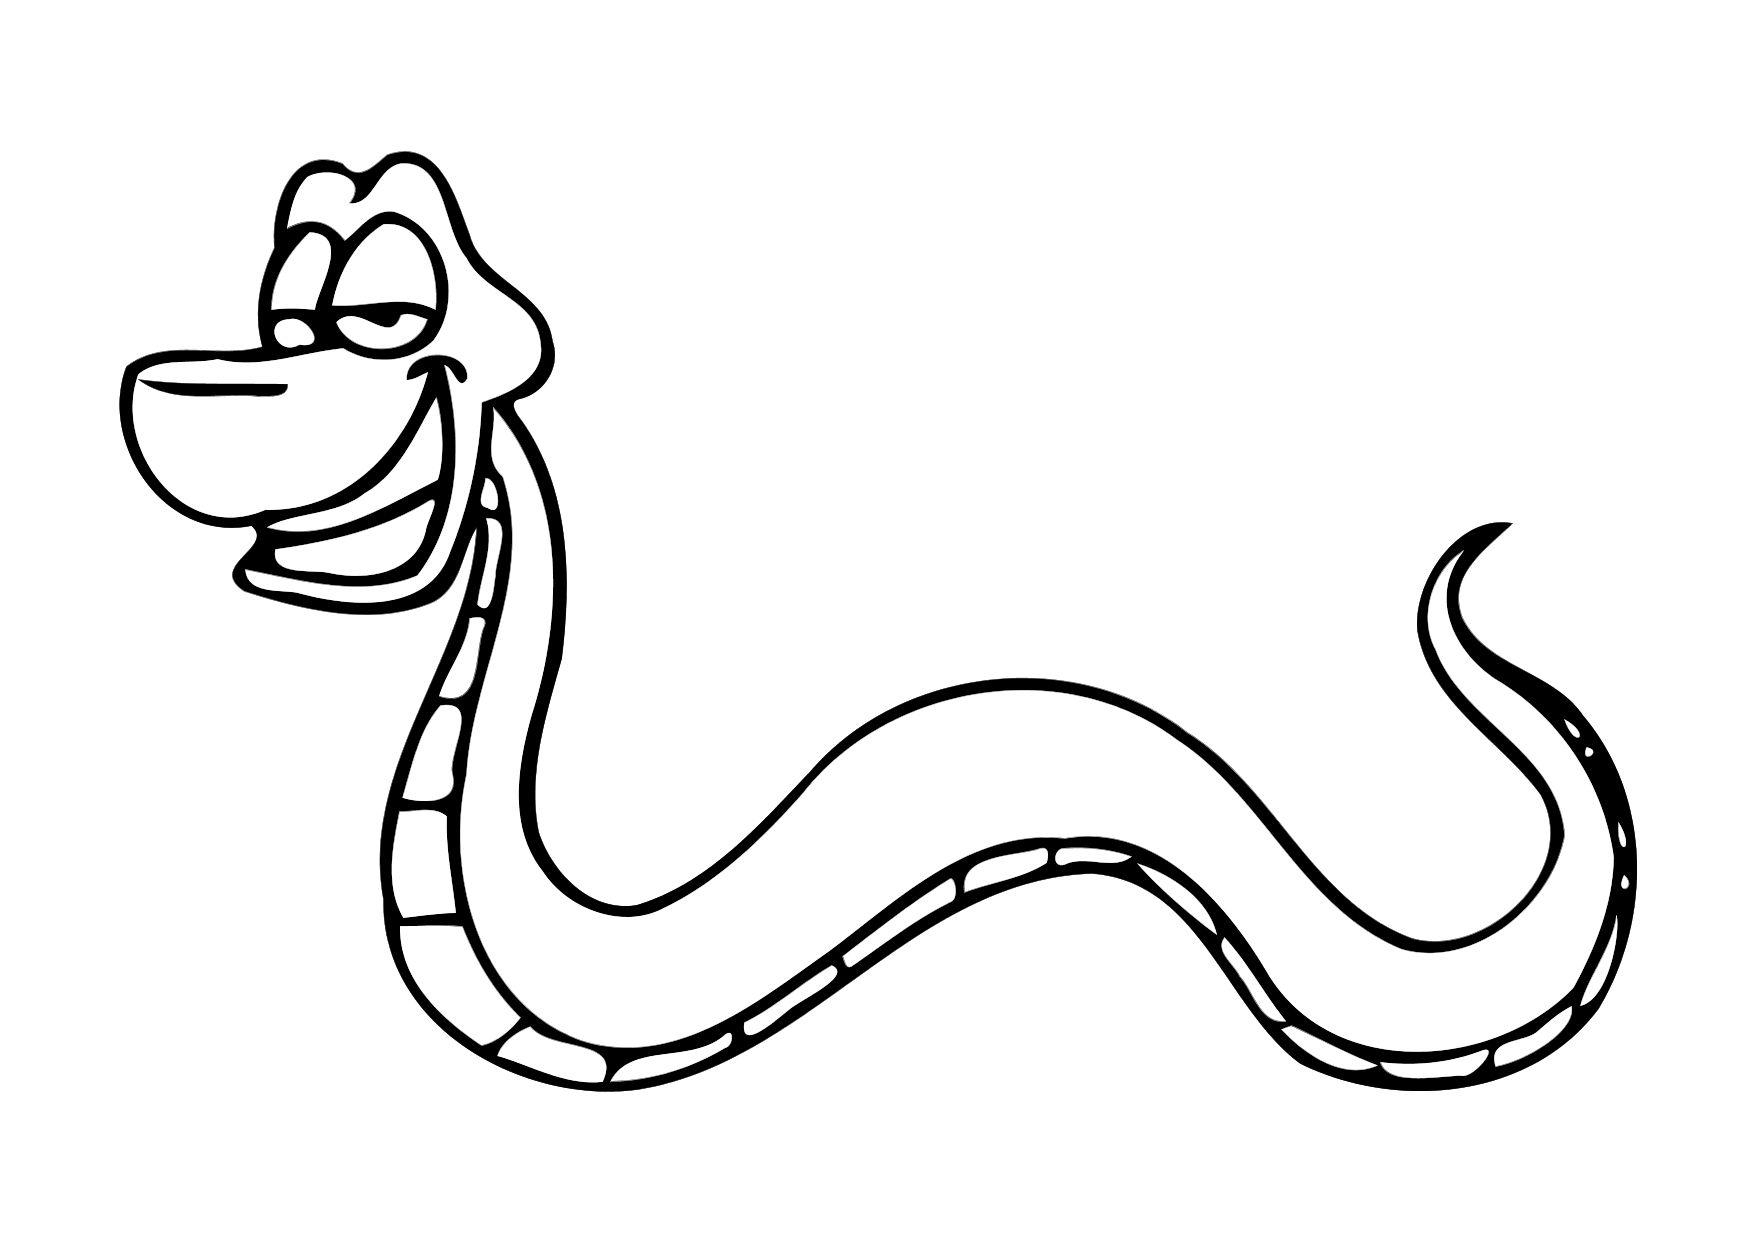 Malvorlage Schlange - Kostenlose Ausmalbilder Zum bestimmt für Ausmalbilder Schlangen